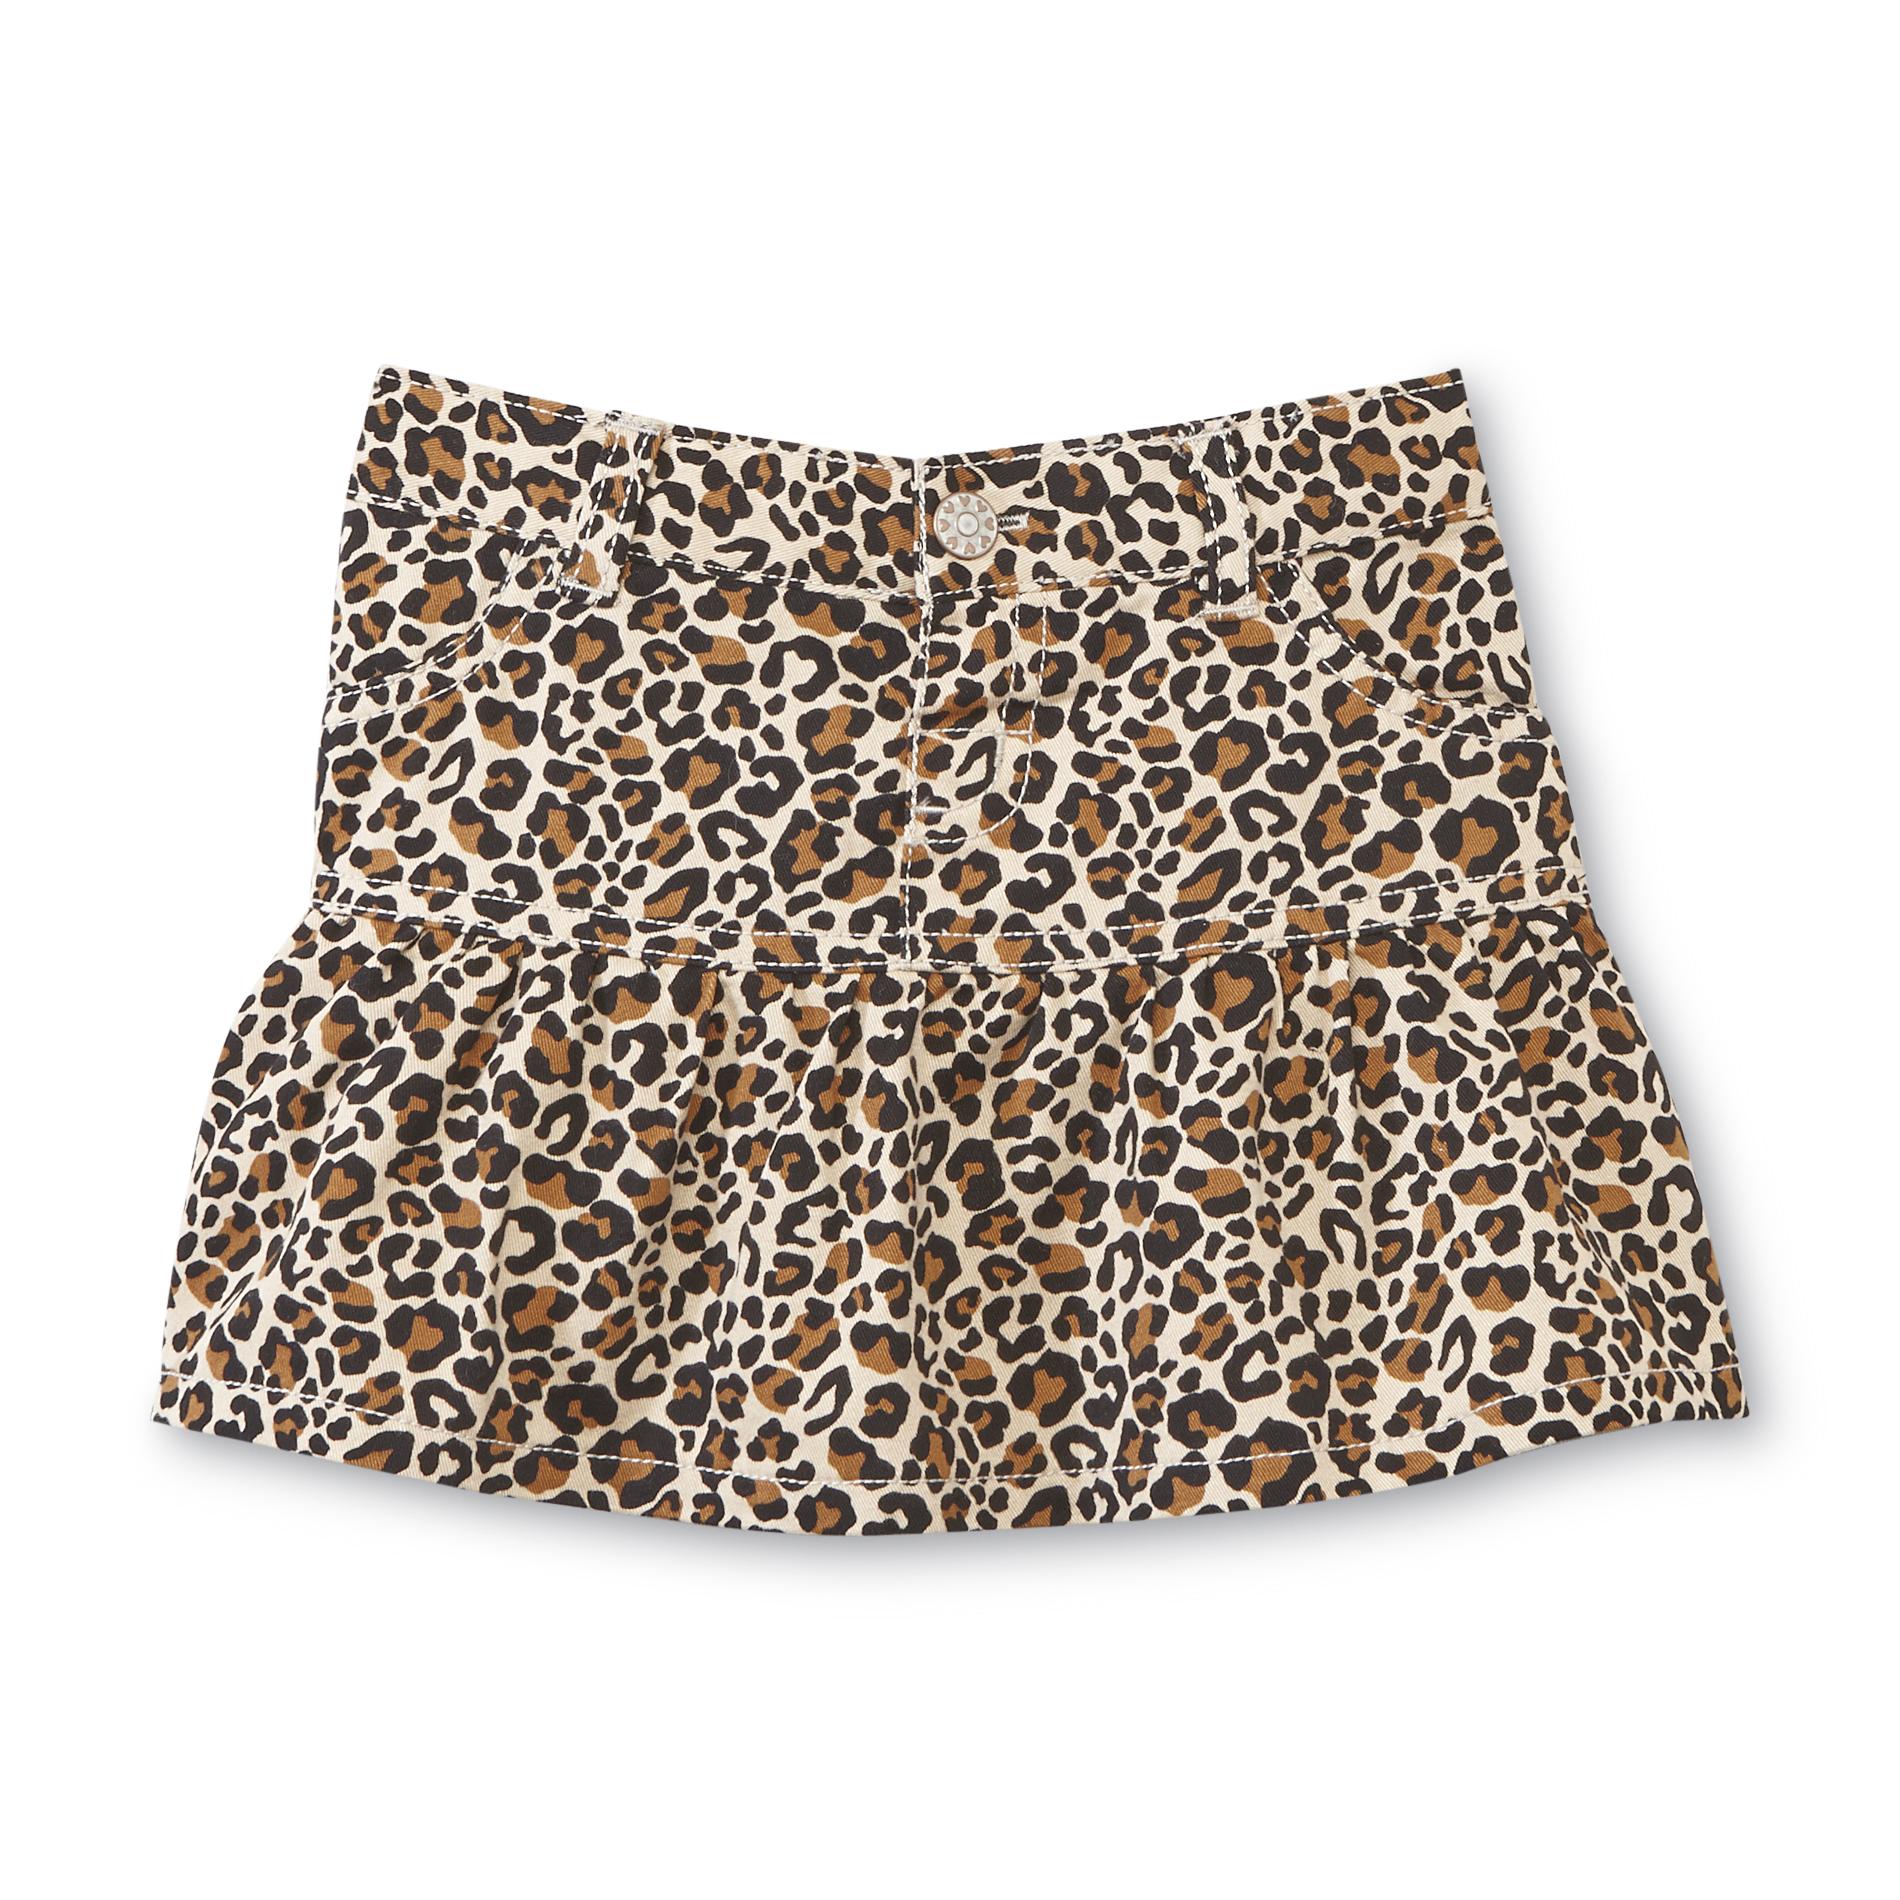 WonderKids Infant & Toddler Girl's Twill Skirt - Leopard Print